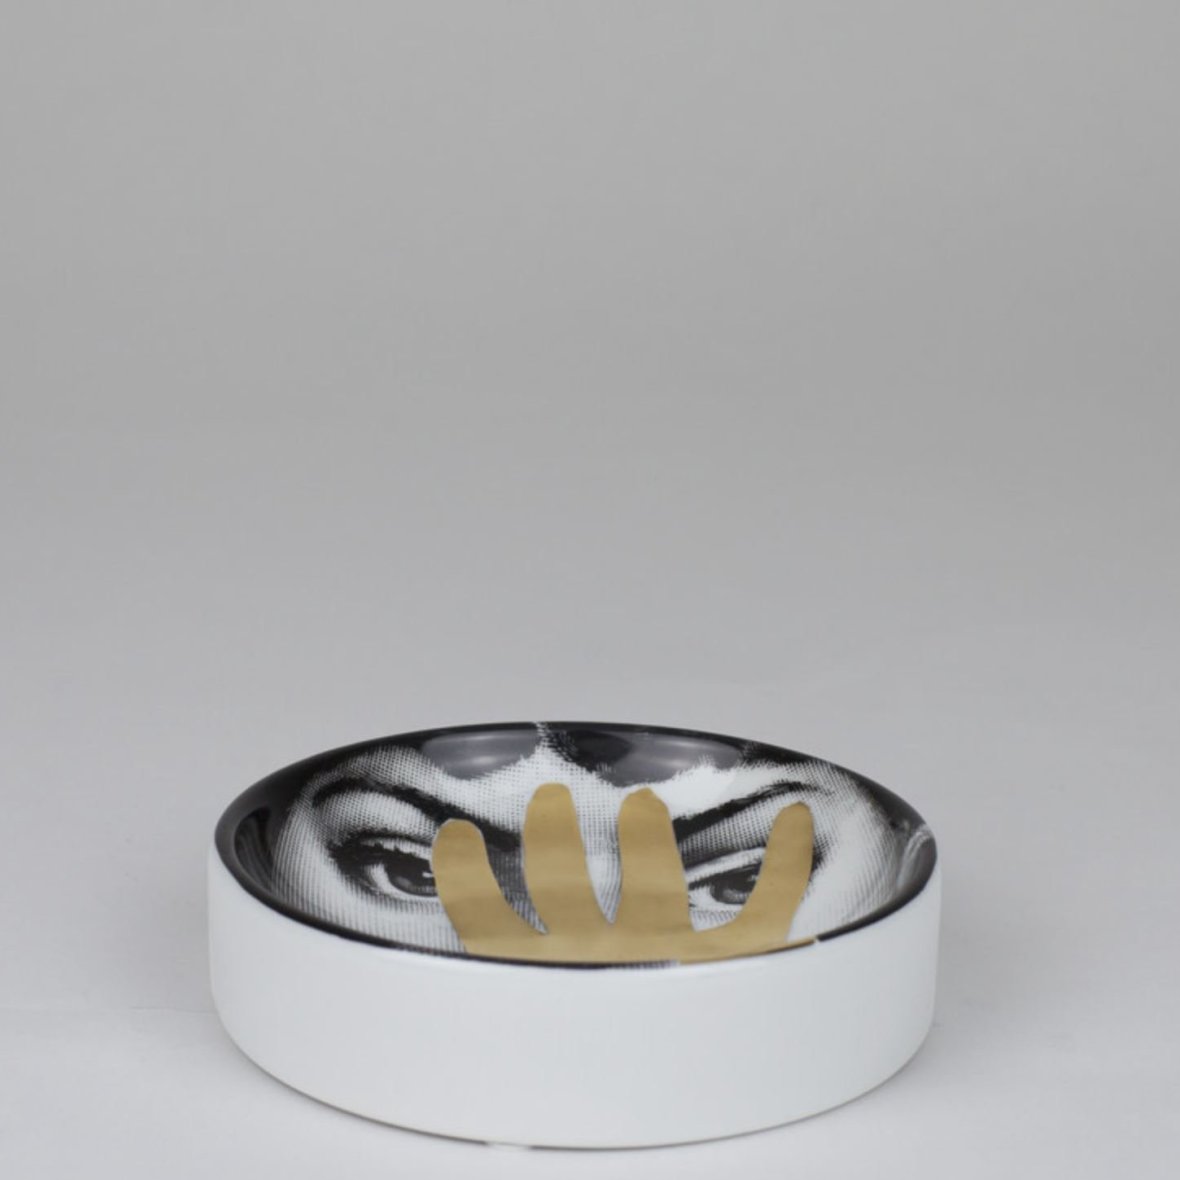 round-ashtray-tema-e-variazioni-n-16-black-white-gold